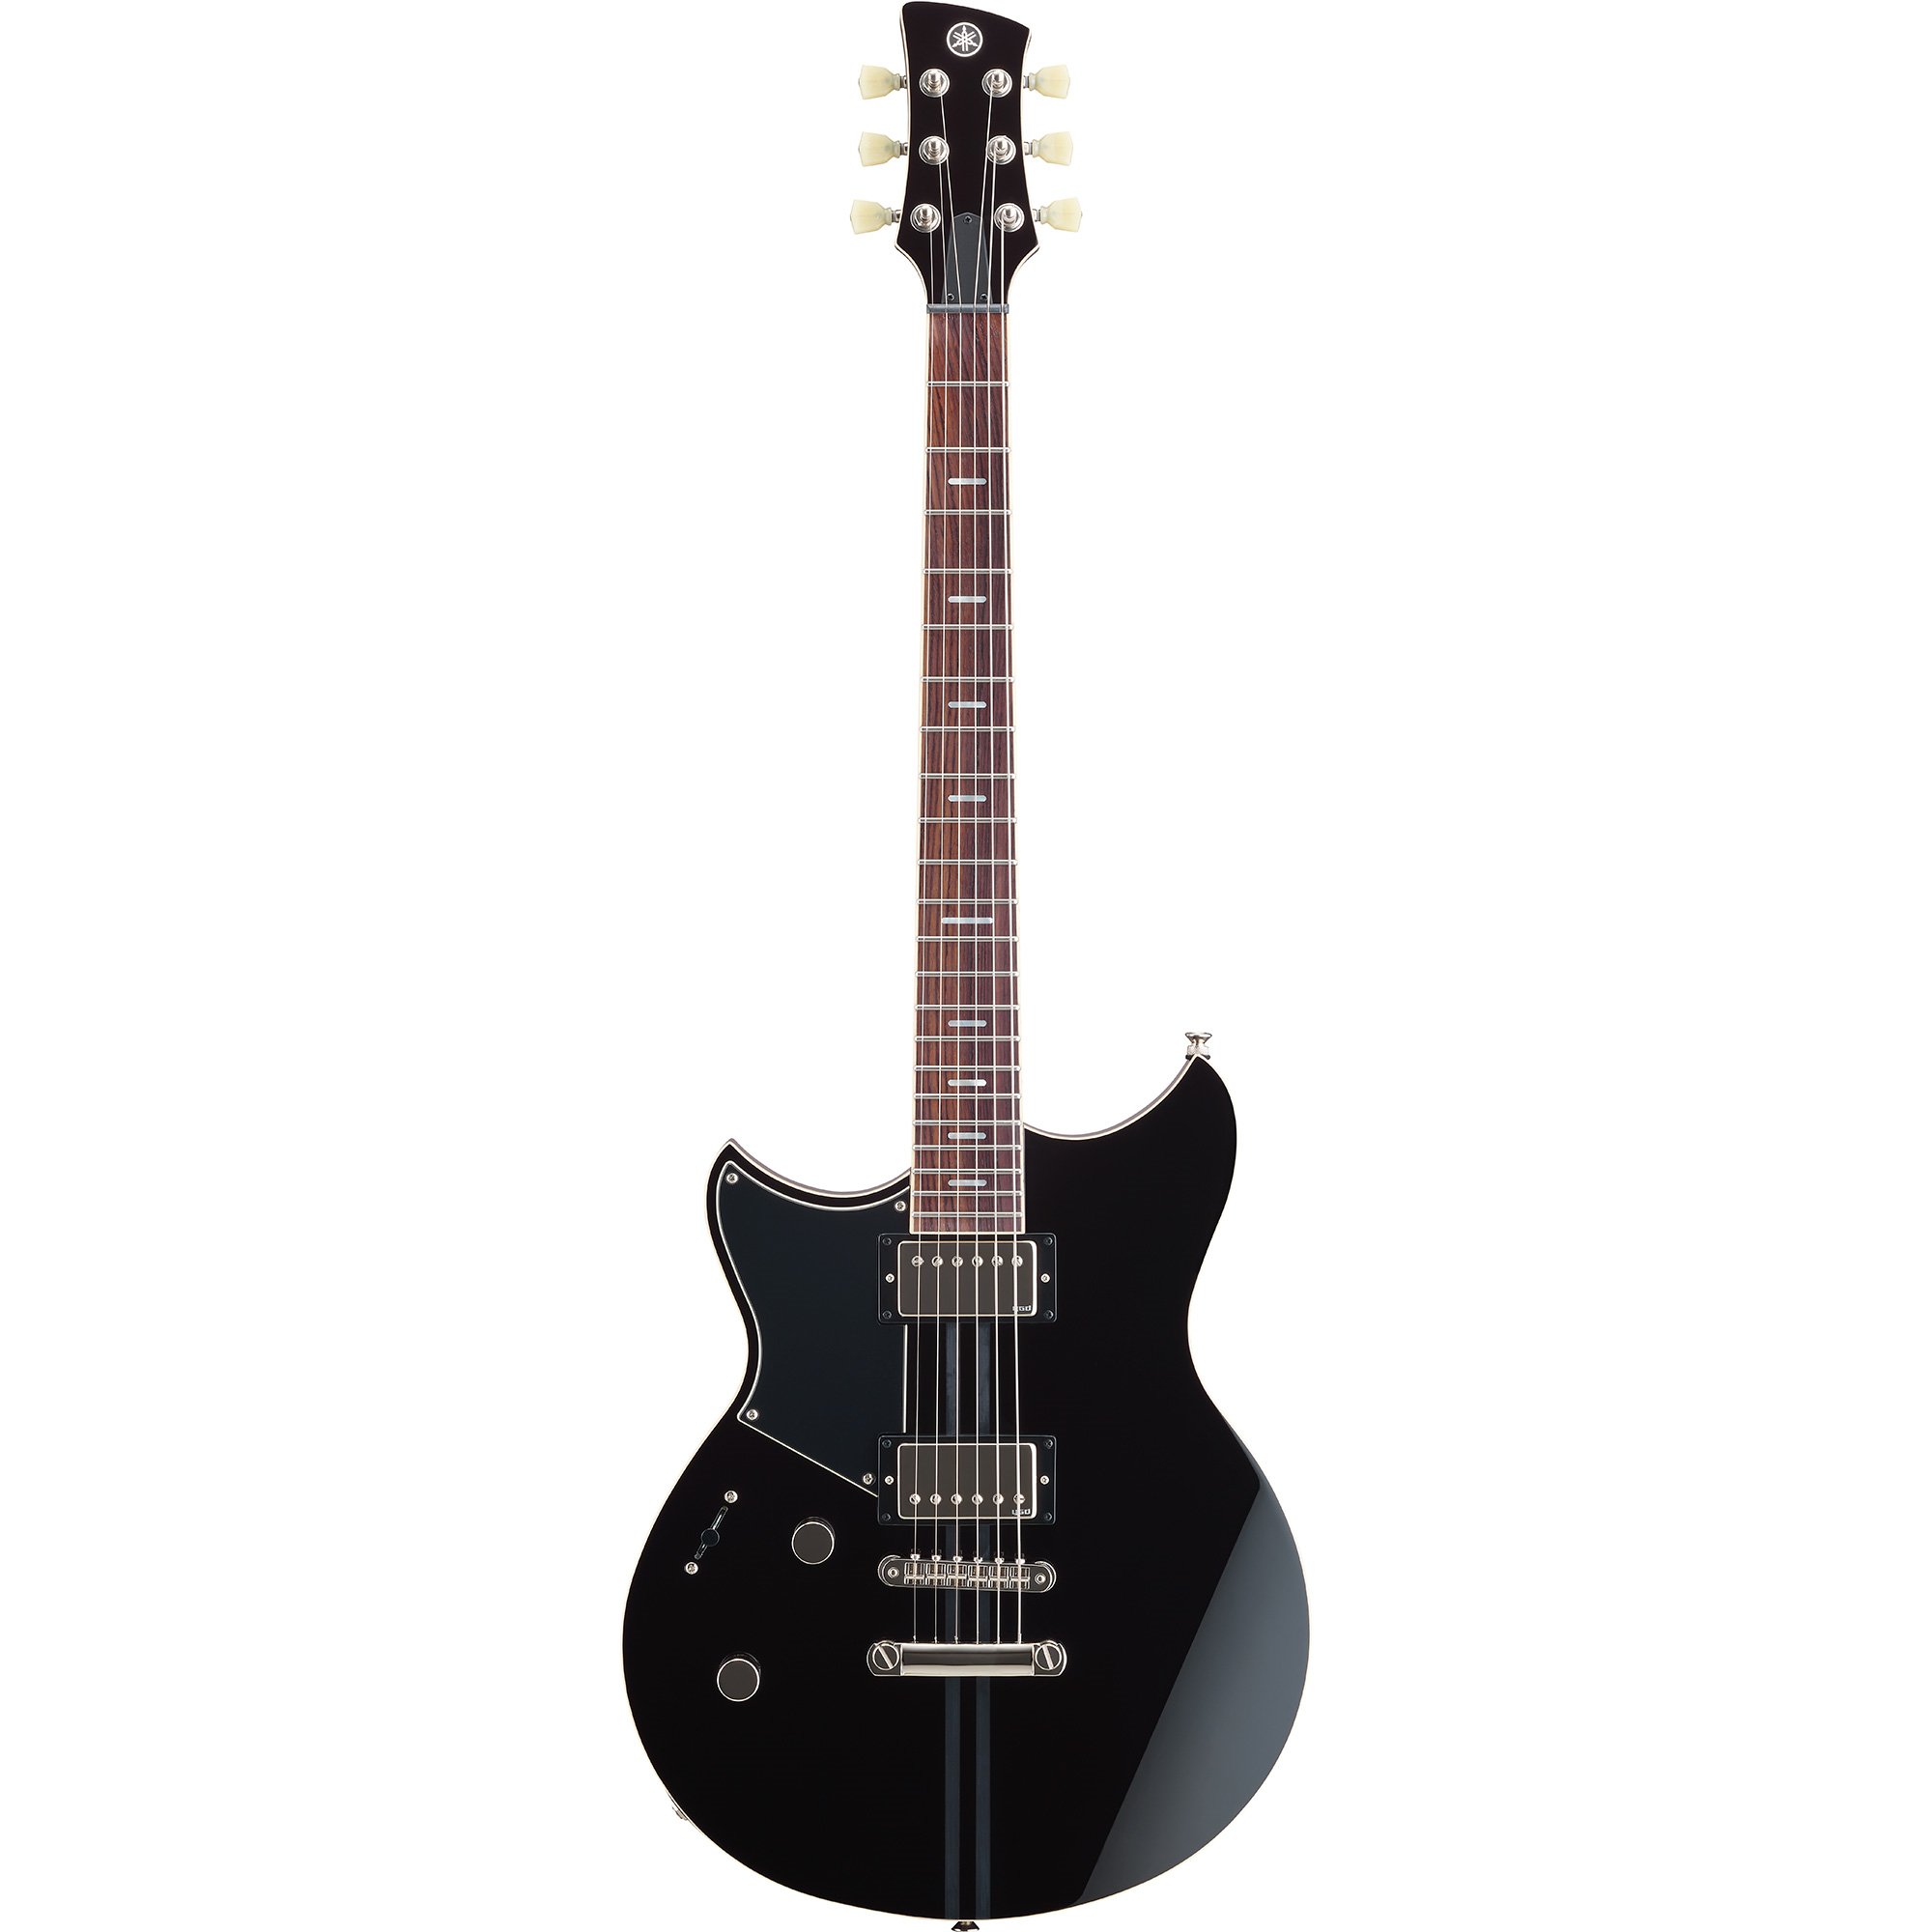 Revstar Electric Guitar Selection - Yamaha USA